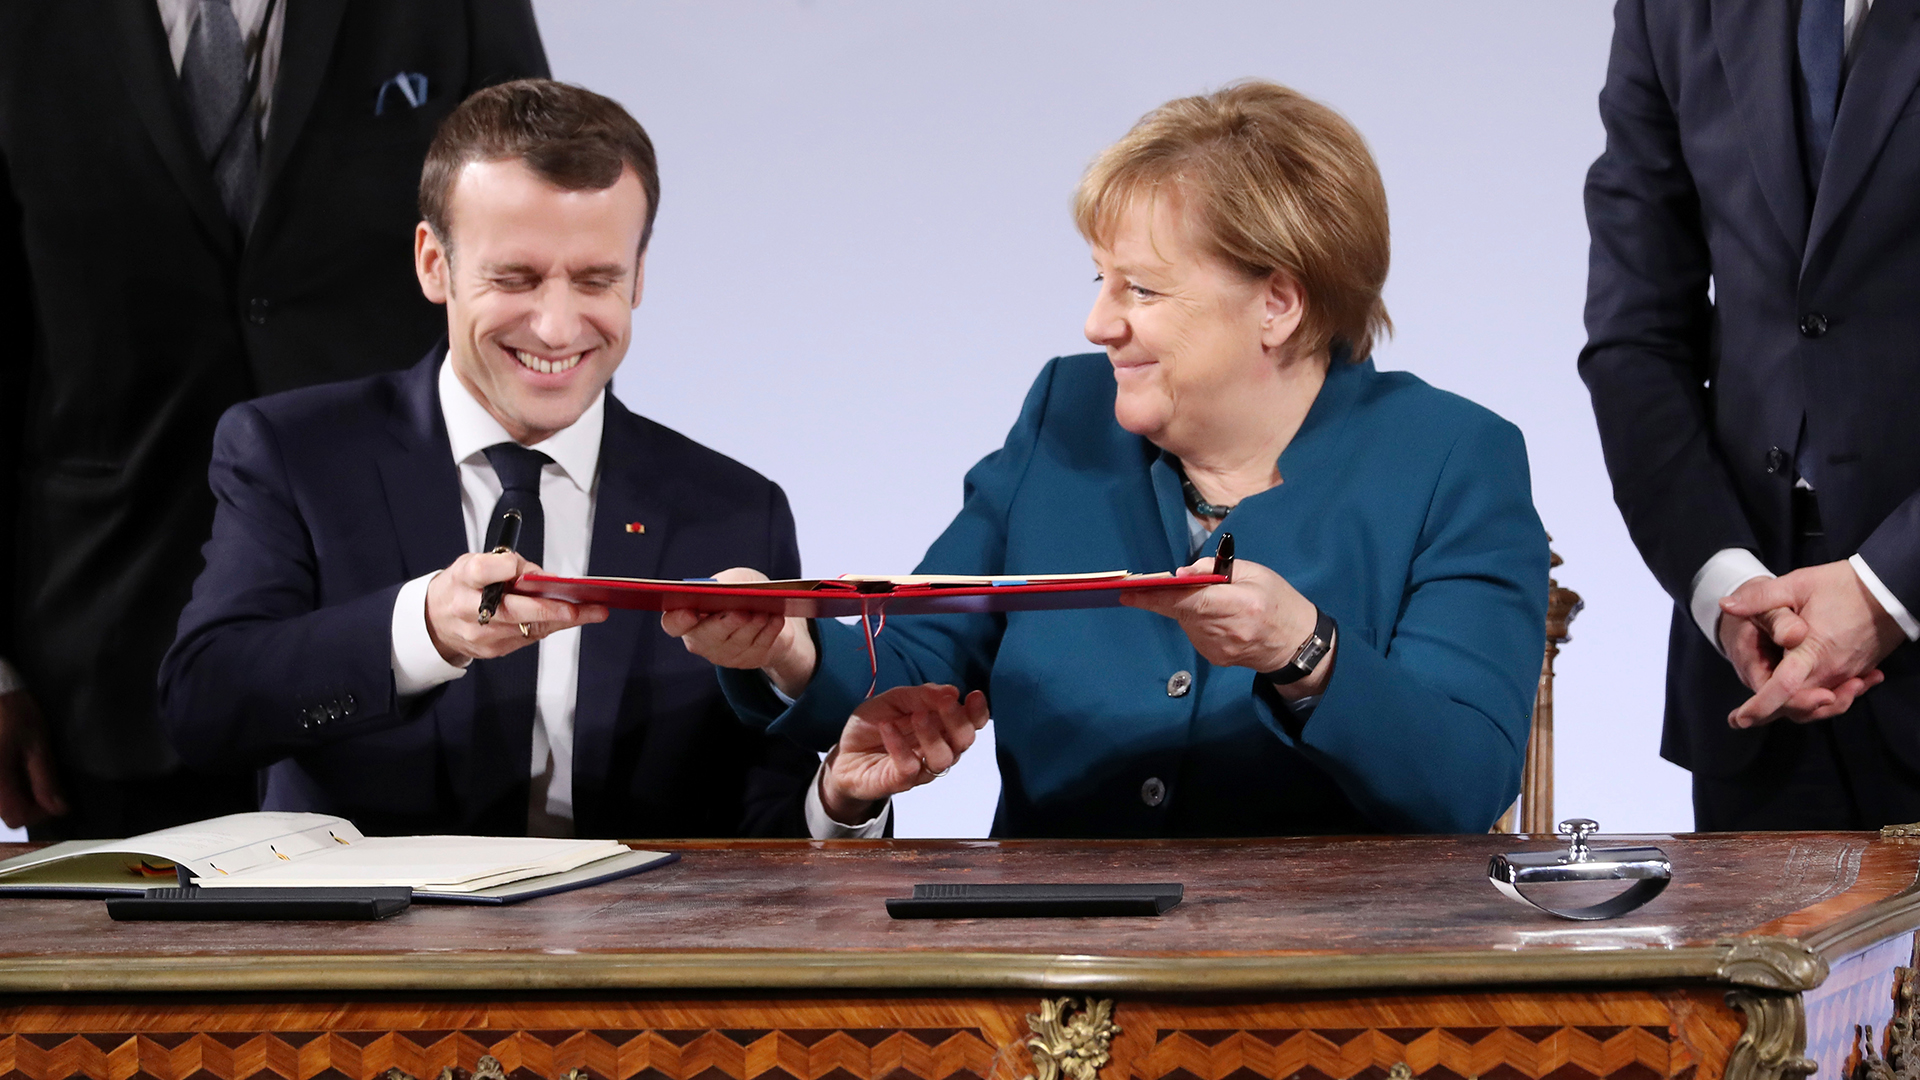  Emmanuel Macron und Angela Merkel unterzeichnen Aachener Vertrag